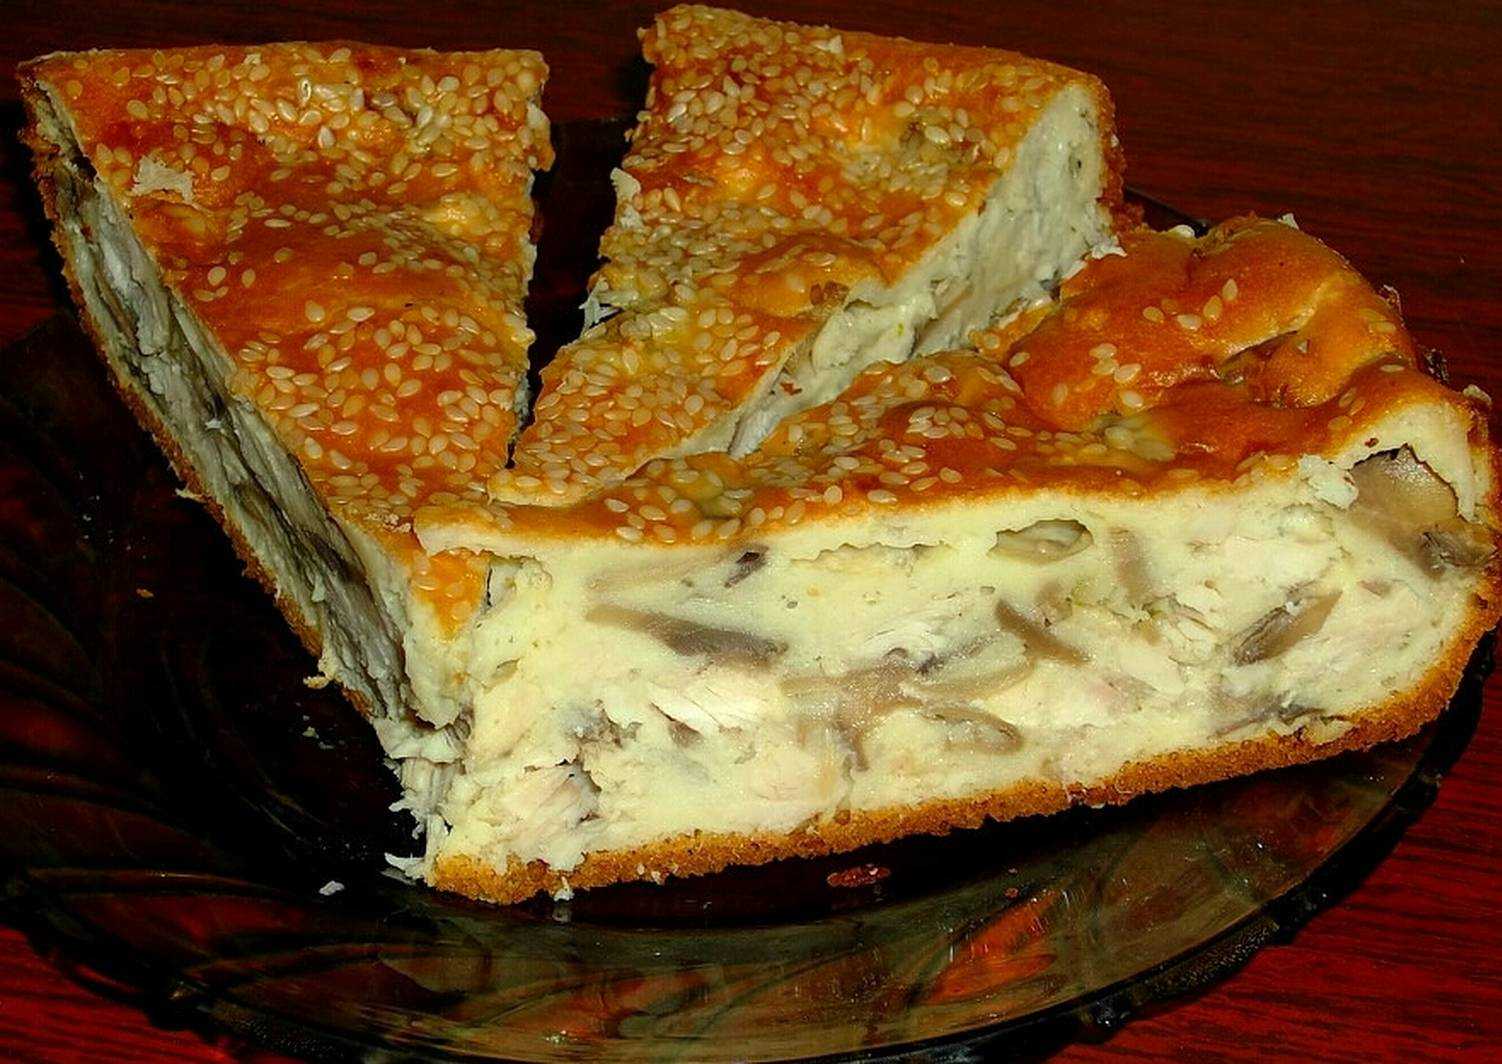 Дрожжевые пироги в мультиварке: рецепты и фото пирогов из дрожжевого теста, приготовленных в мультиварке